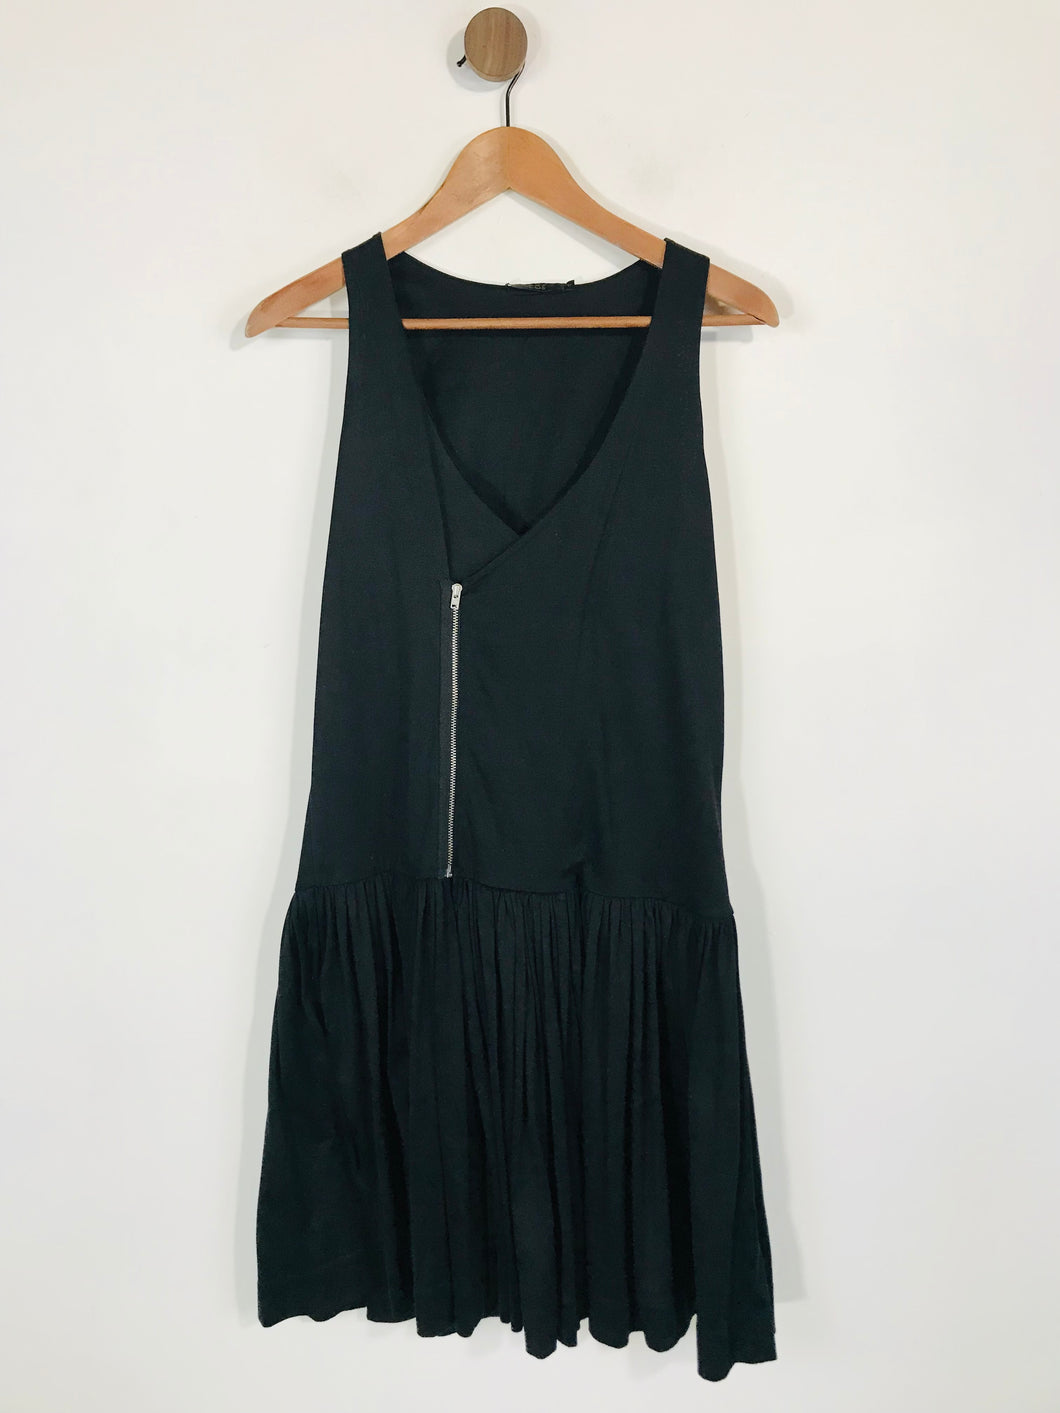 Cos Women's Cotton Ruched A-Line Dress | S UK8 | Black